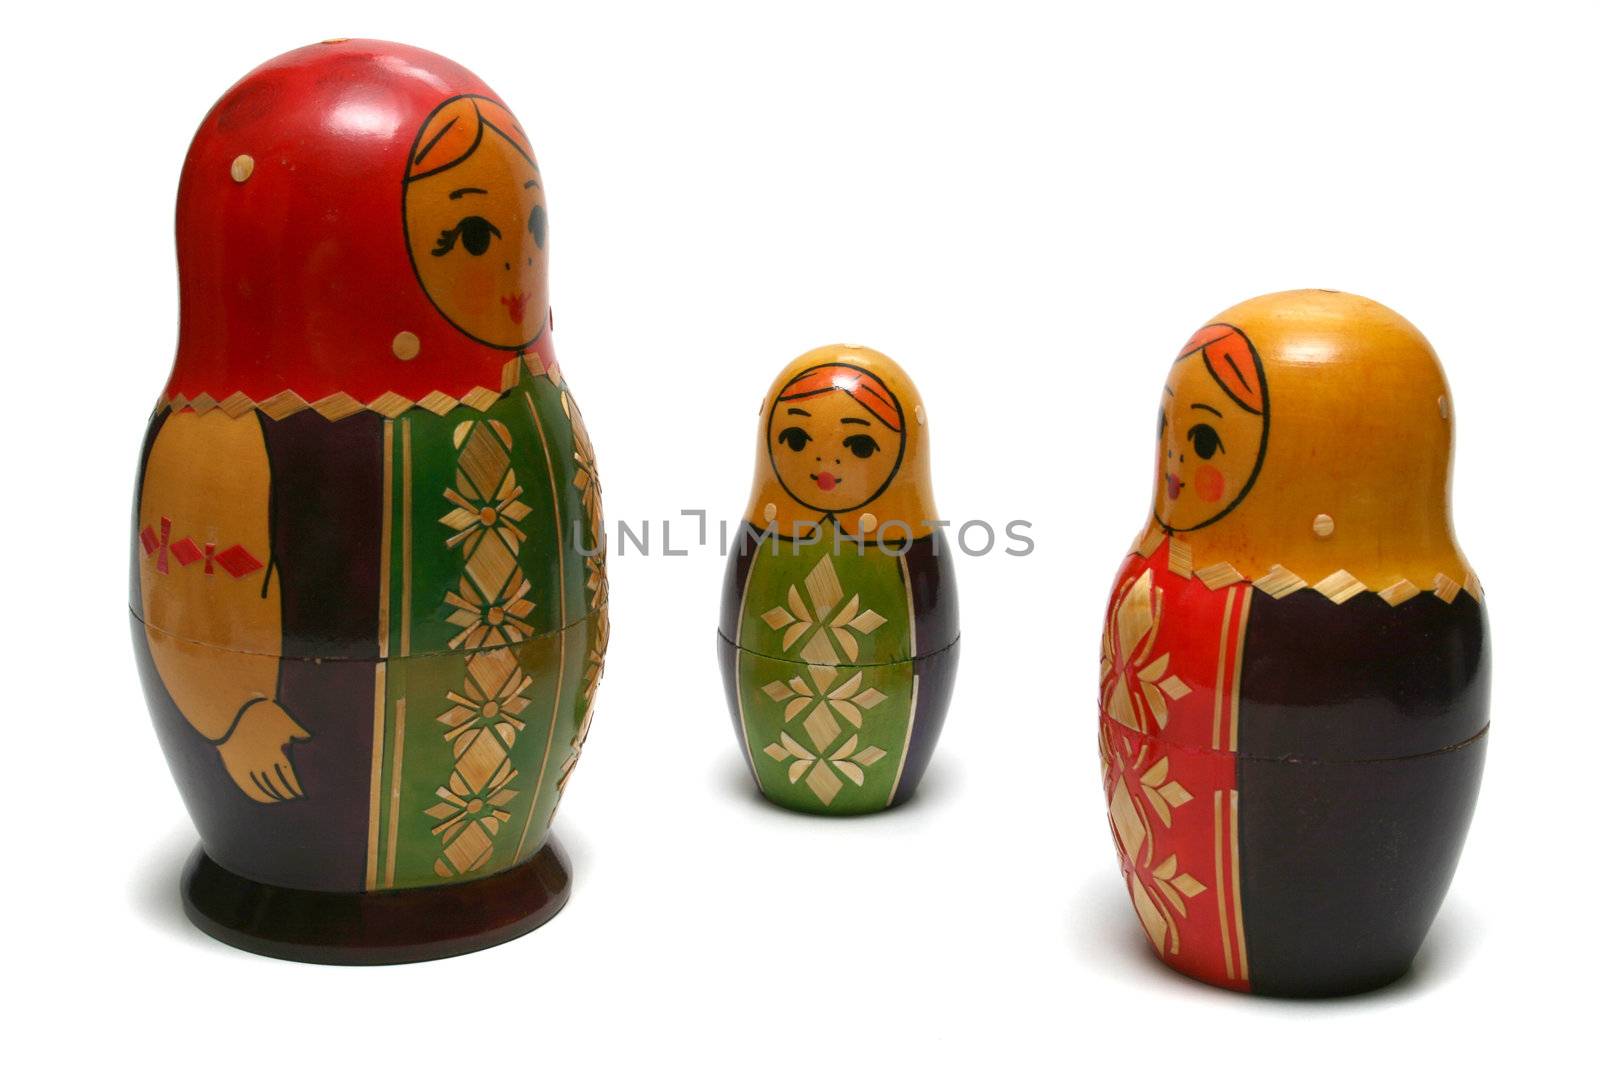 Three russian dolls by Gdolgikh